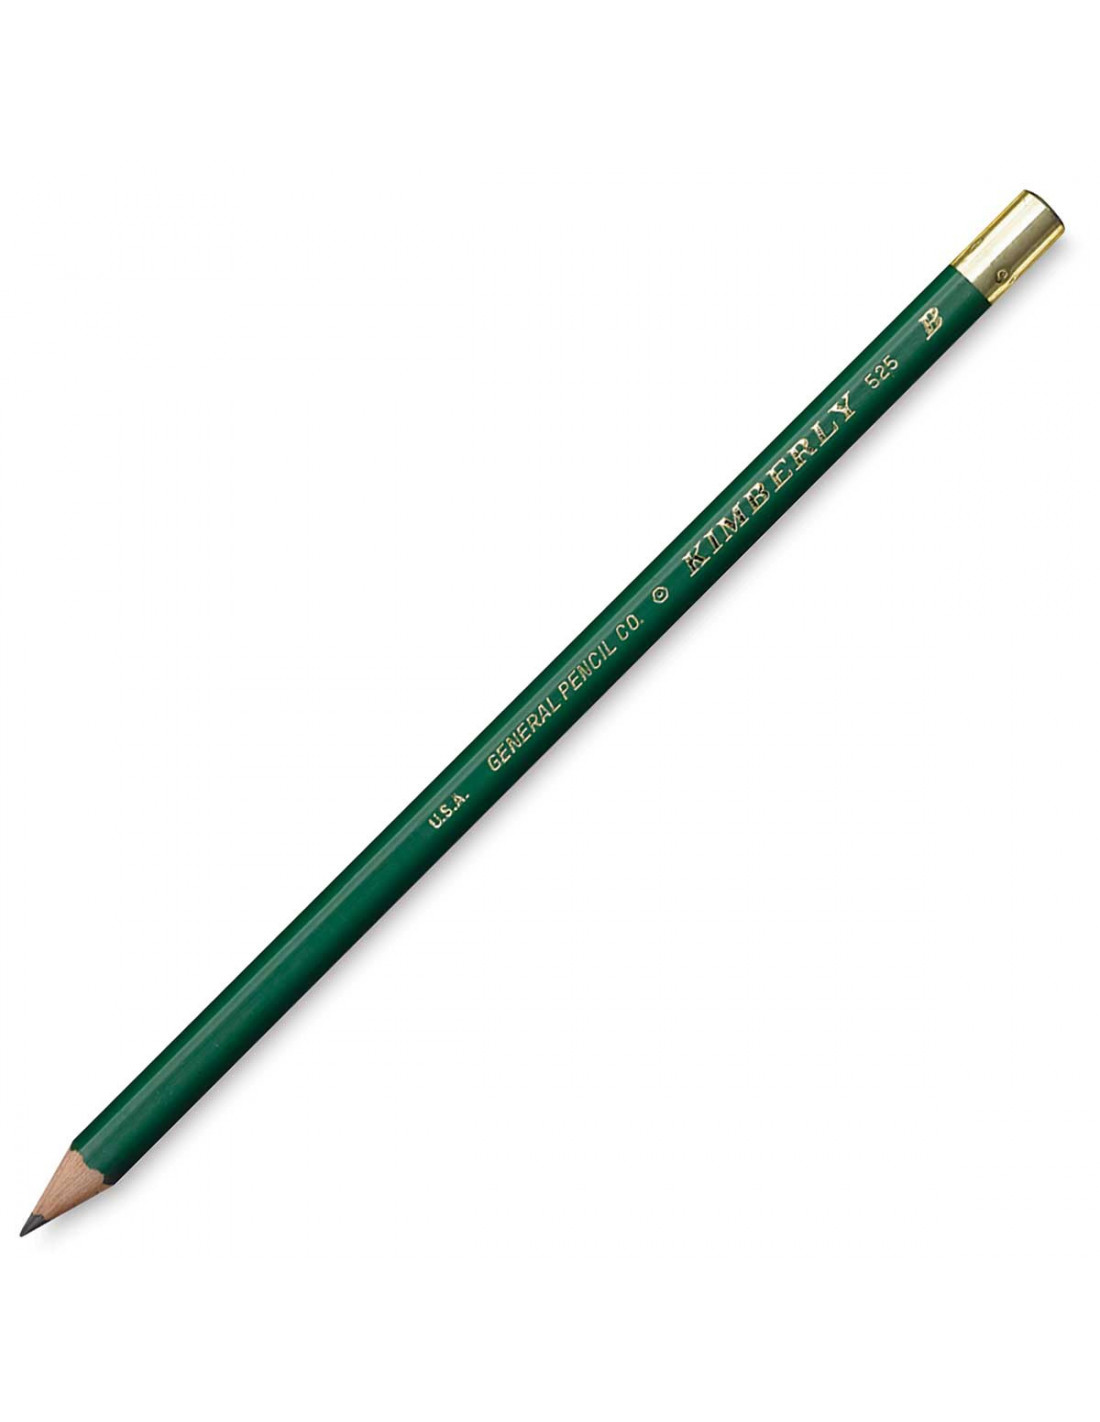 Crayon à Papier - hexagonal - mine 2 mm - dureté 8B